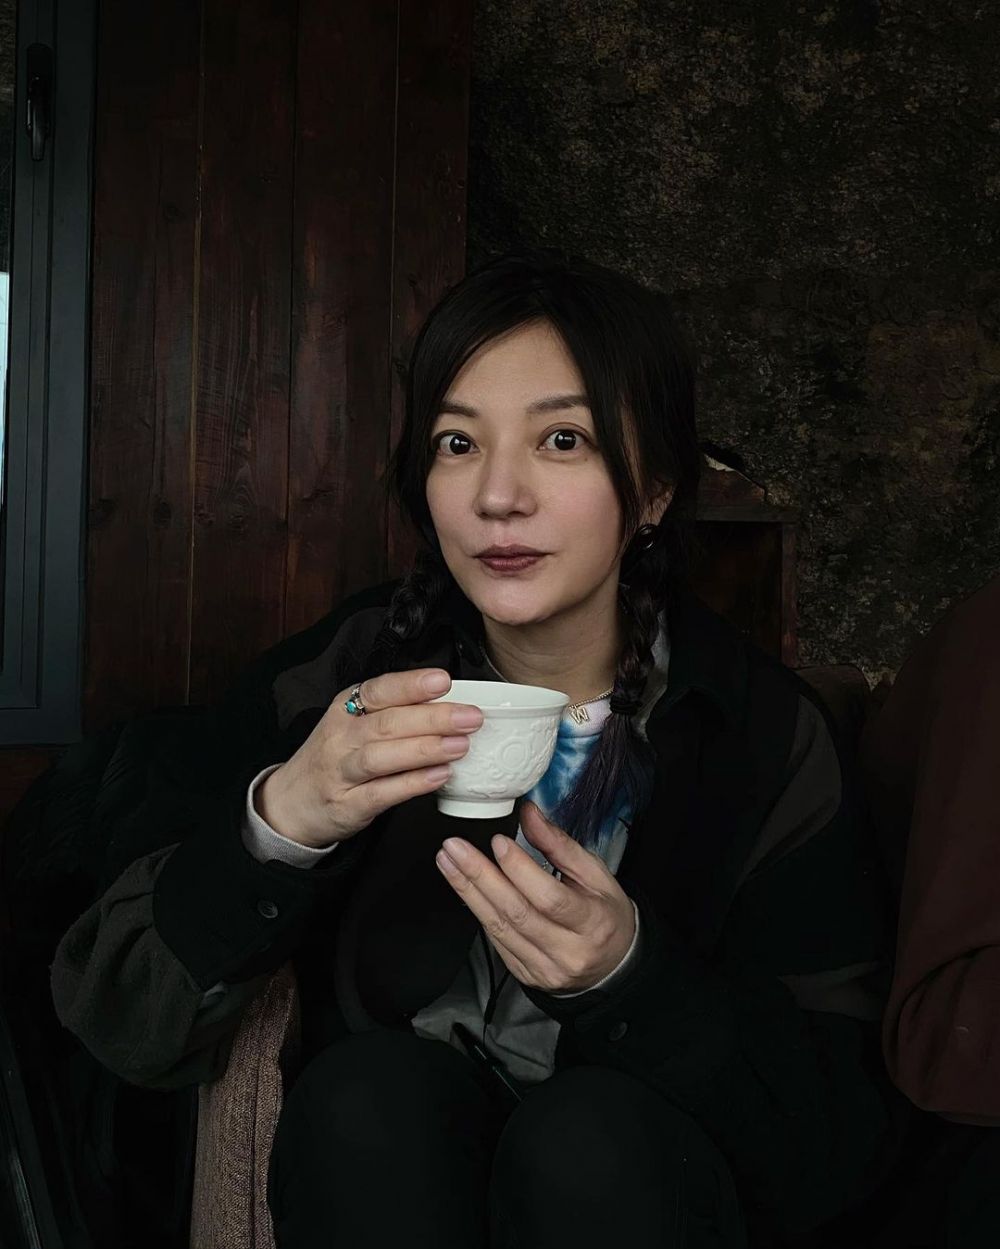 Kronologi kasus aktris Vicky Zhao hingga di-blacklist pemerintah China